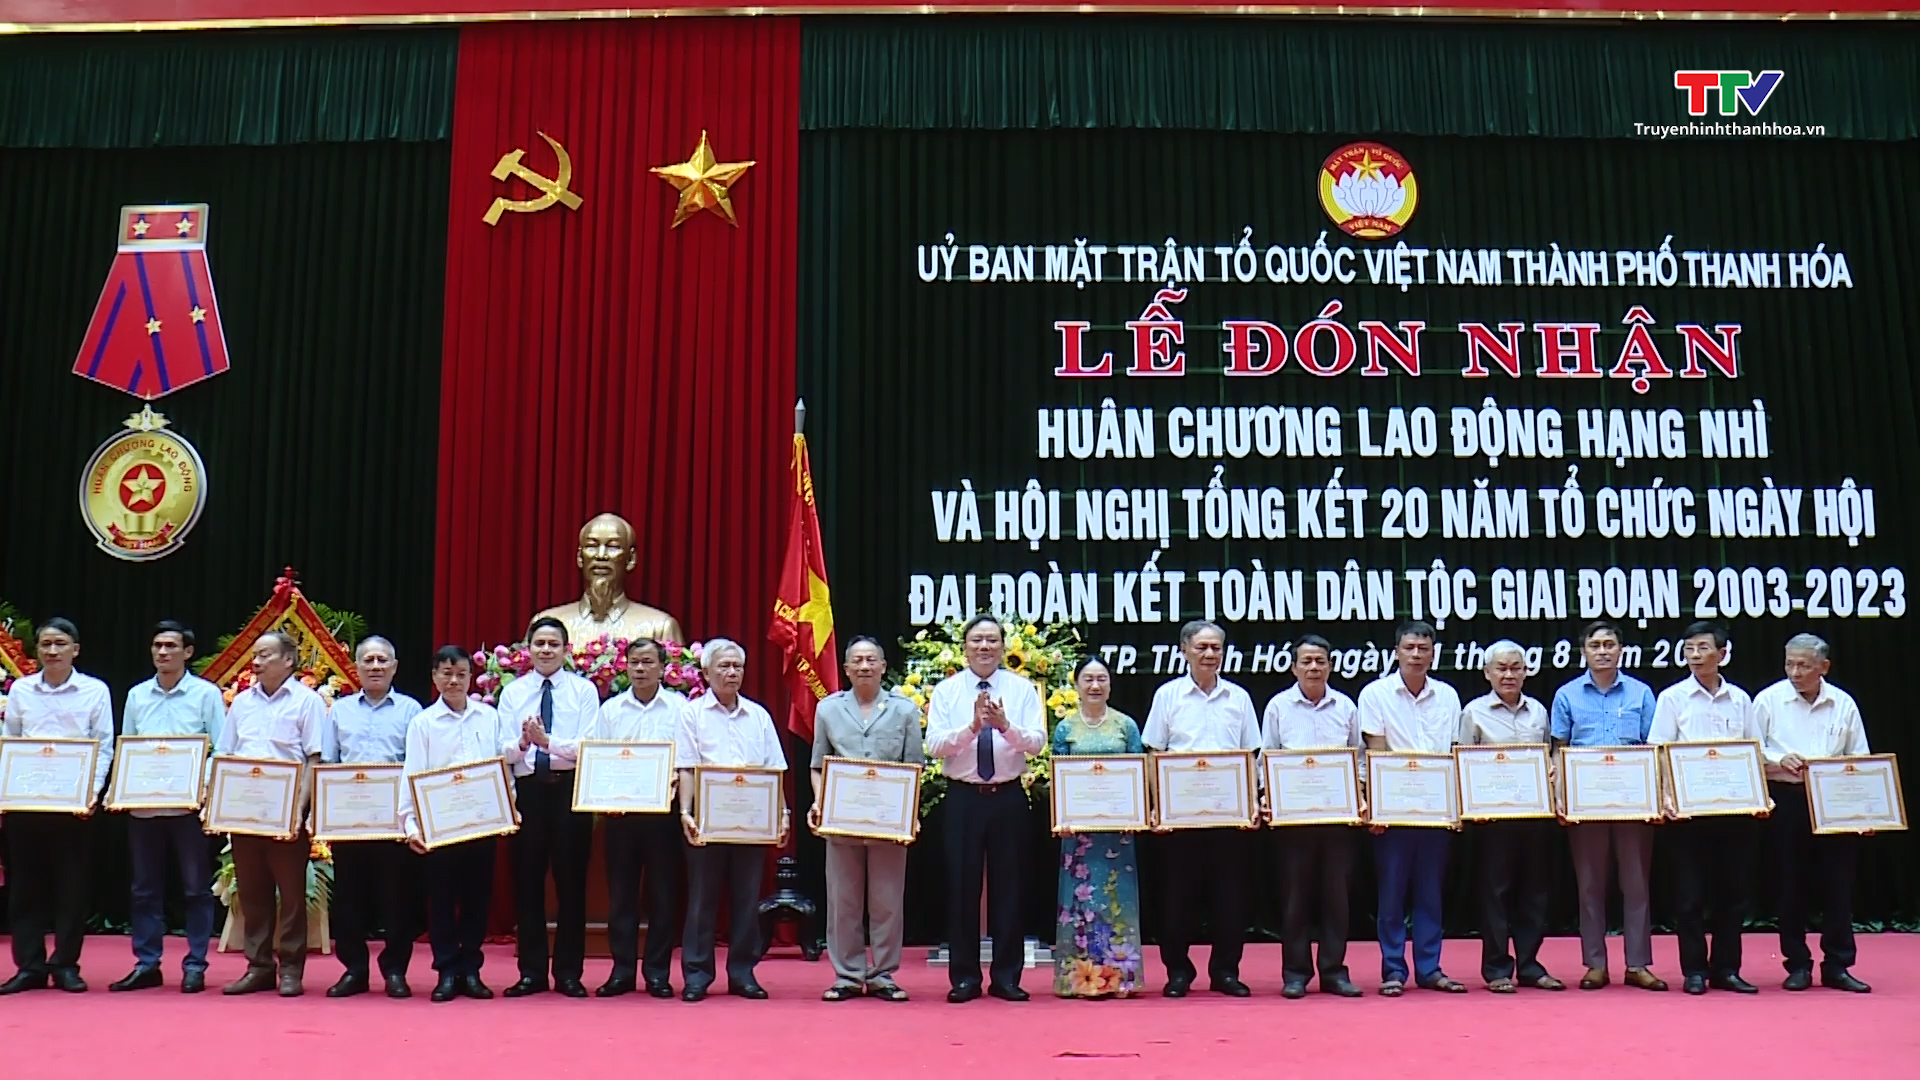 Ủy ban Mặt trận tổ quốc thành phố Thanh Hóa đón nhận Huân chương Lao động hạng Nhì và tổng kết 20 năm tổ chức Ngày hội đại đoàn kết toàn dân tộc - Ảnh 4.